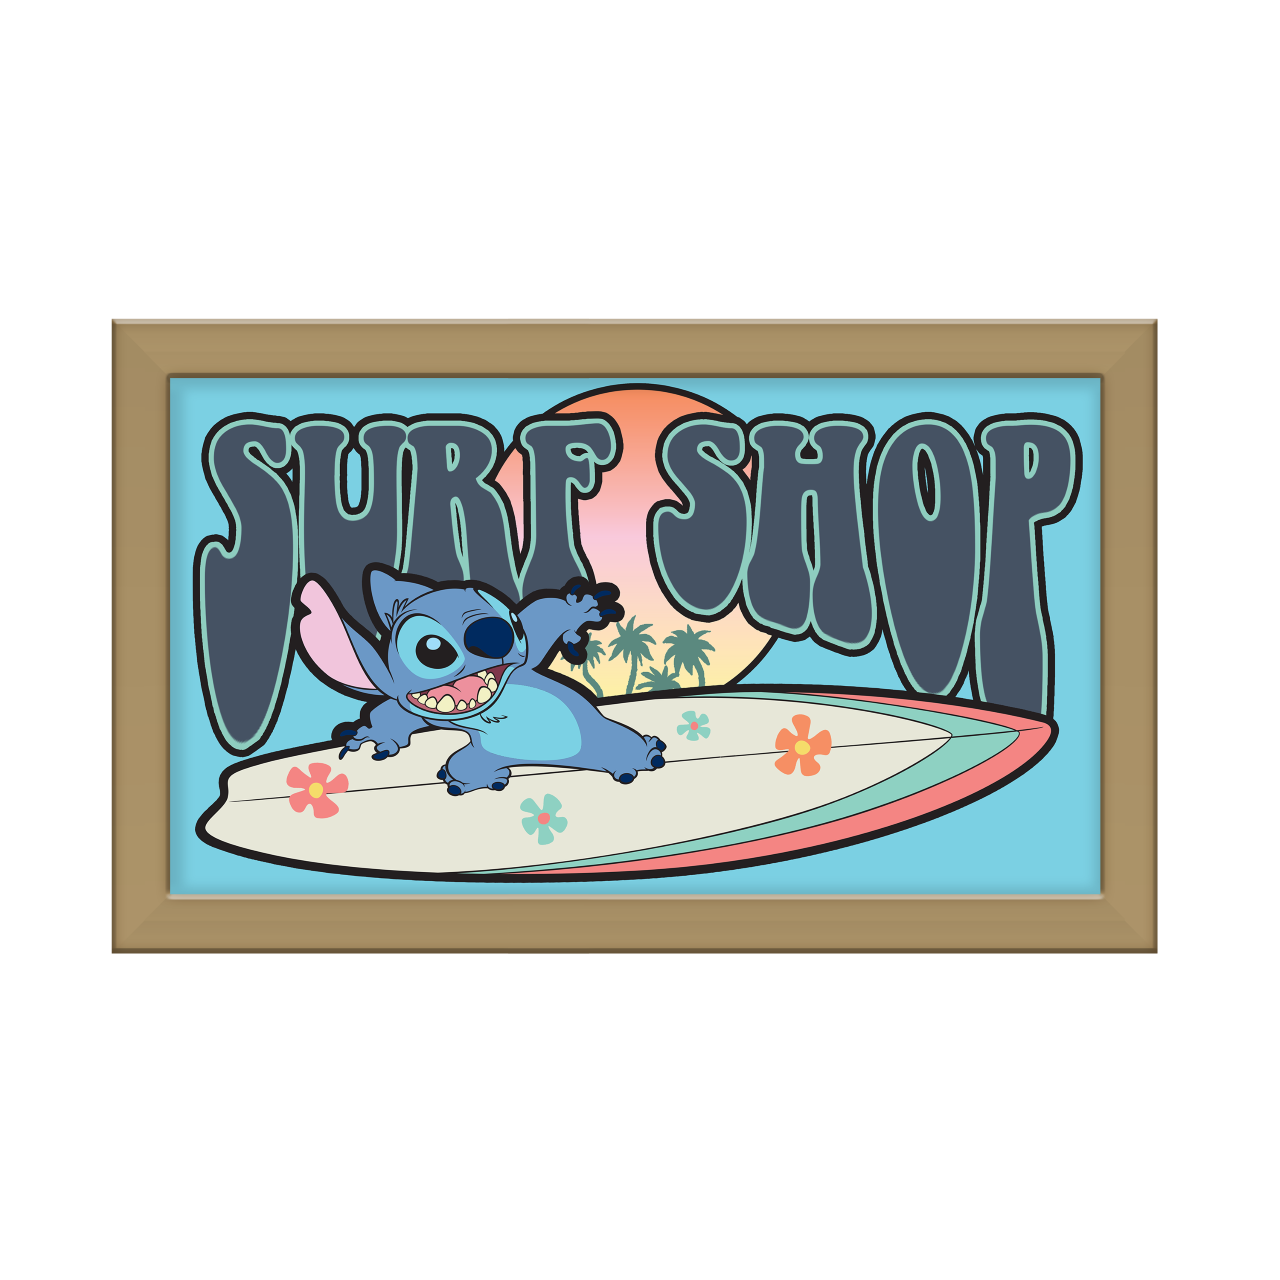 Lilo and Stitch Surf Shop Gel Coat 10" x 18" Framed MDF Wall Art